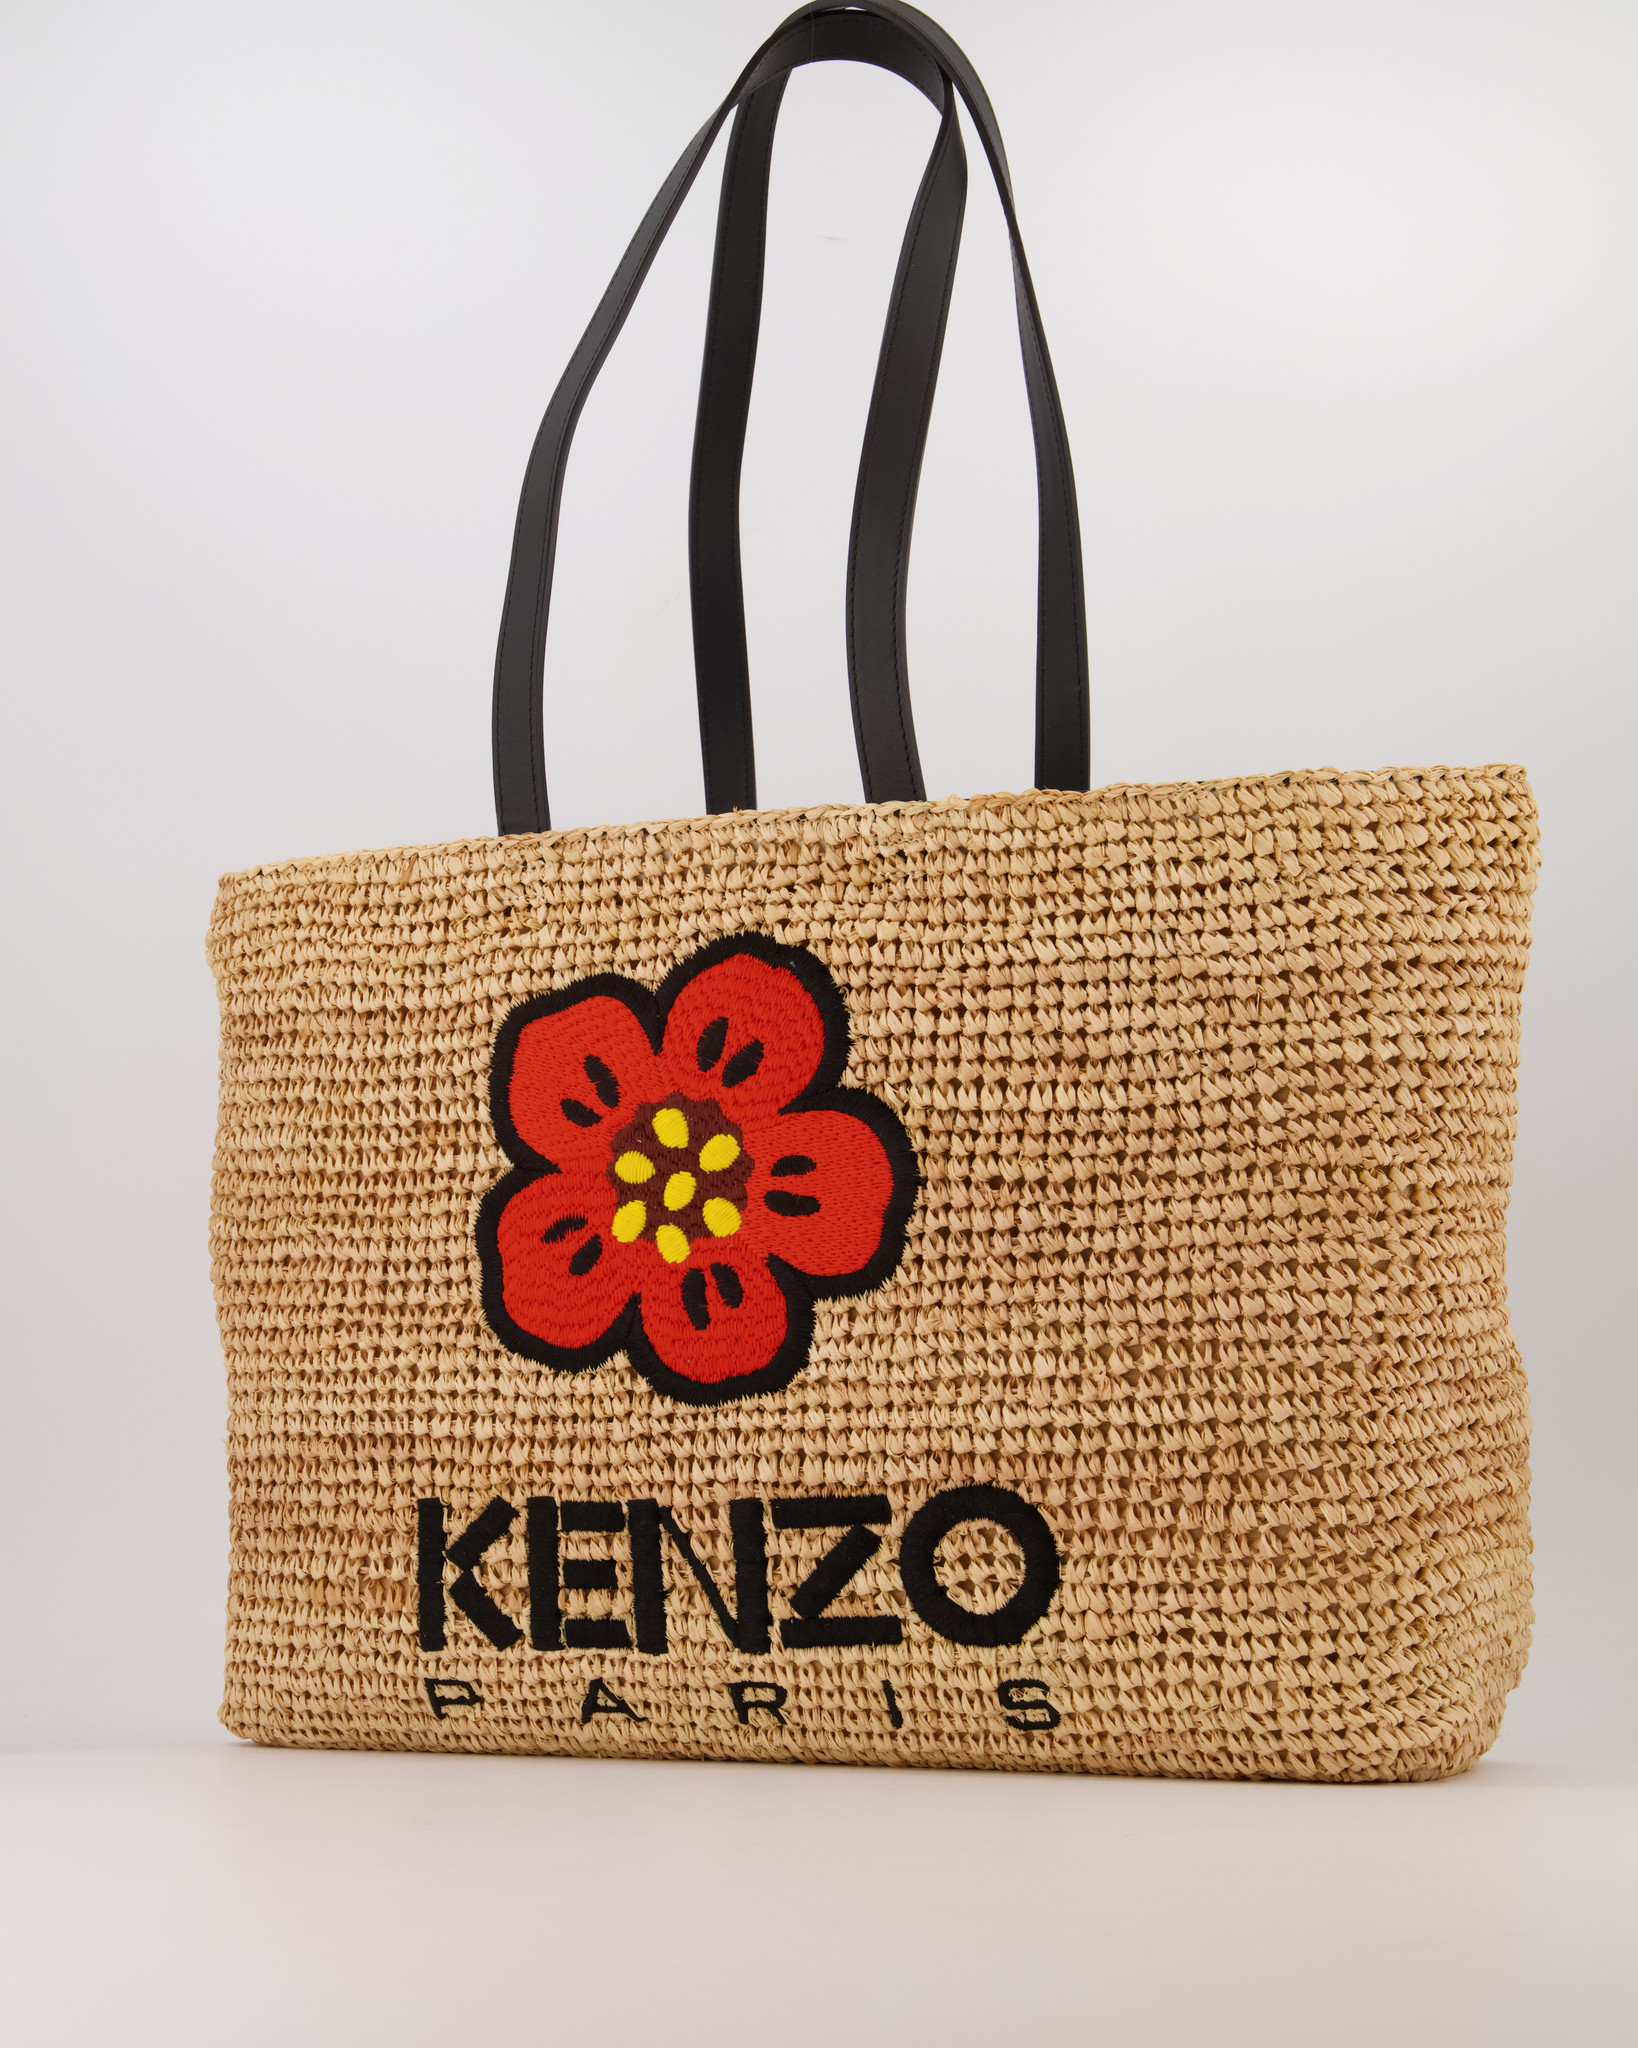 KENZO BY NIGO MAN BLACK TOTE BAGS - KENZO BY NIGO - TOTE BAGS